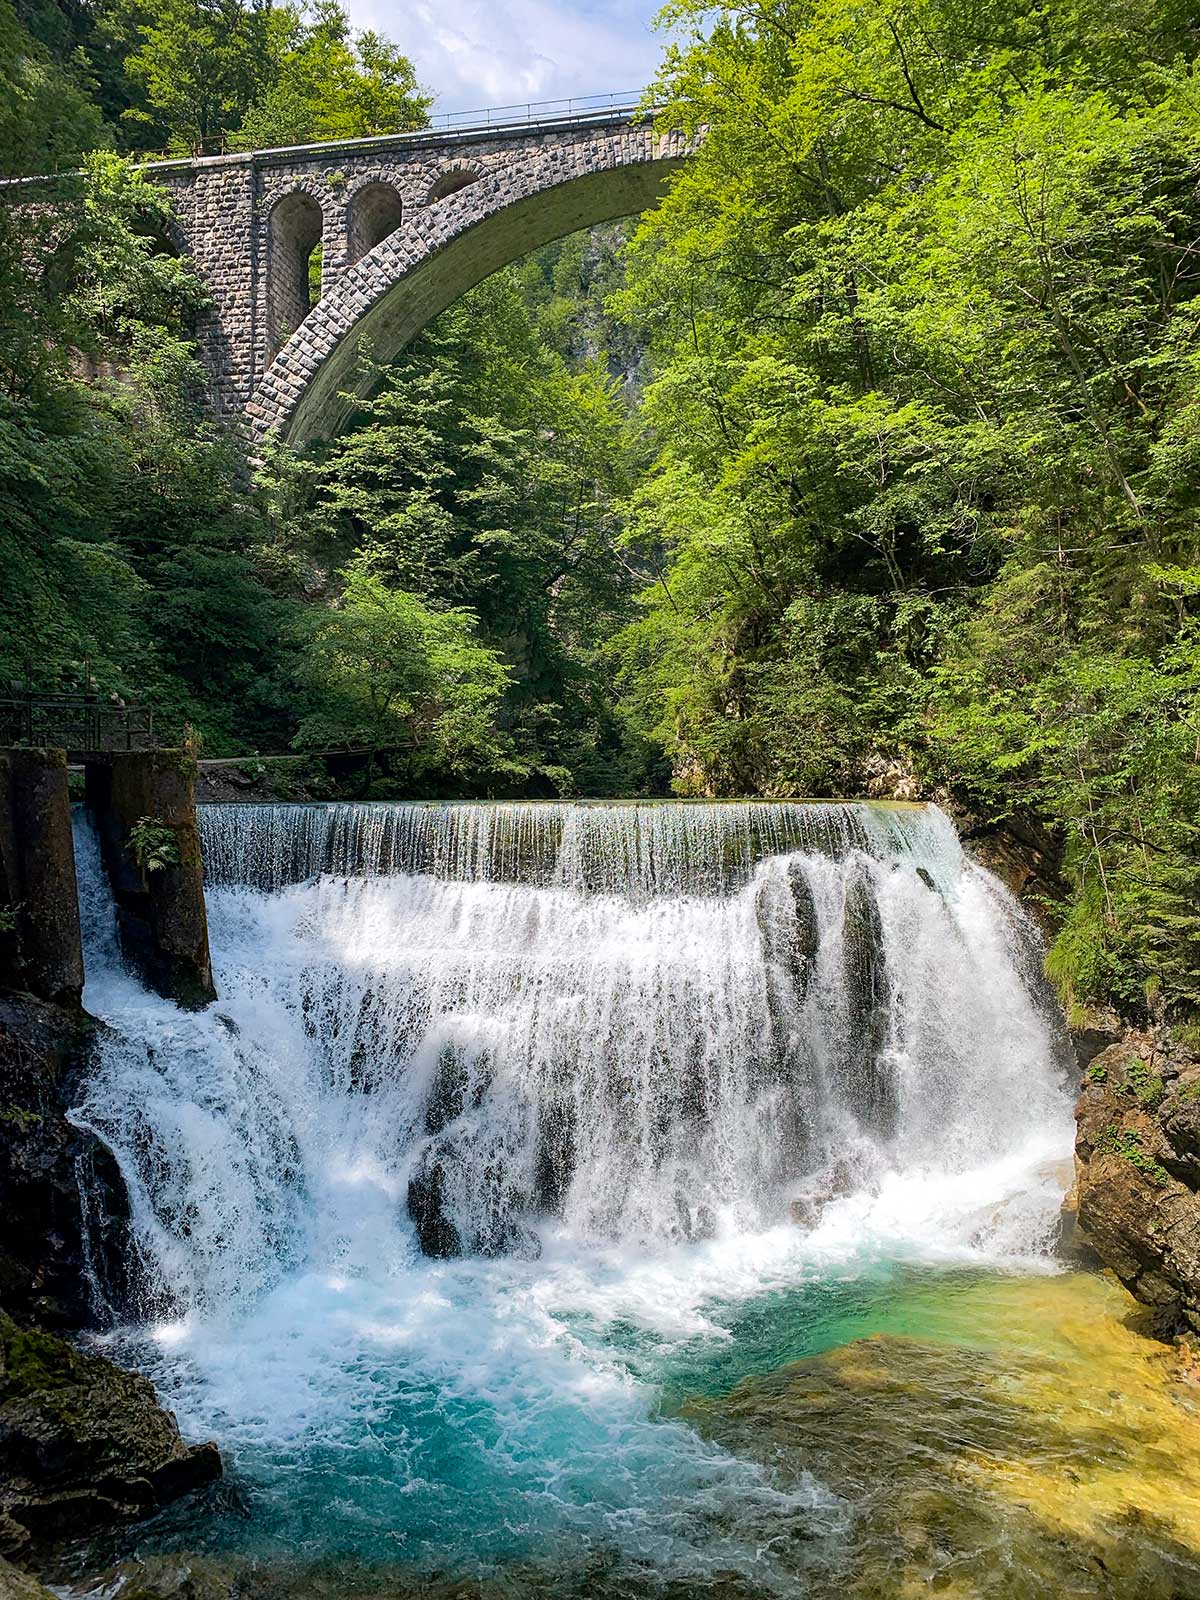 Barrage électrique, Gorges de Vintgar, Slovénie / Dam, Vintgar gorges, Slovenia